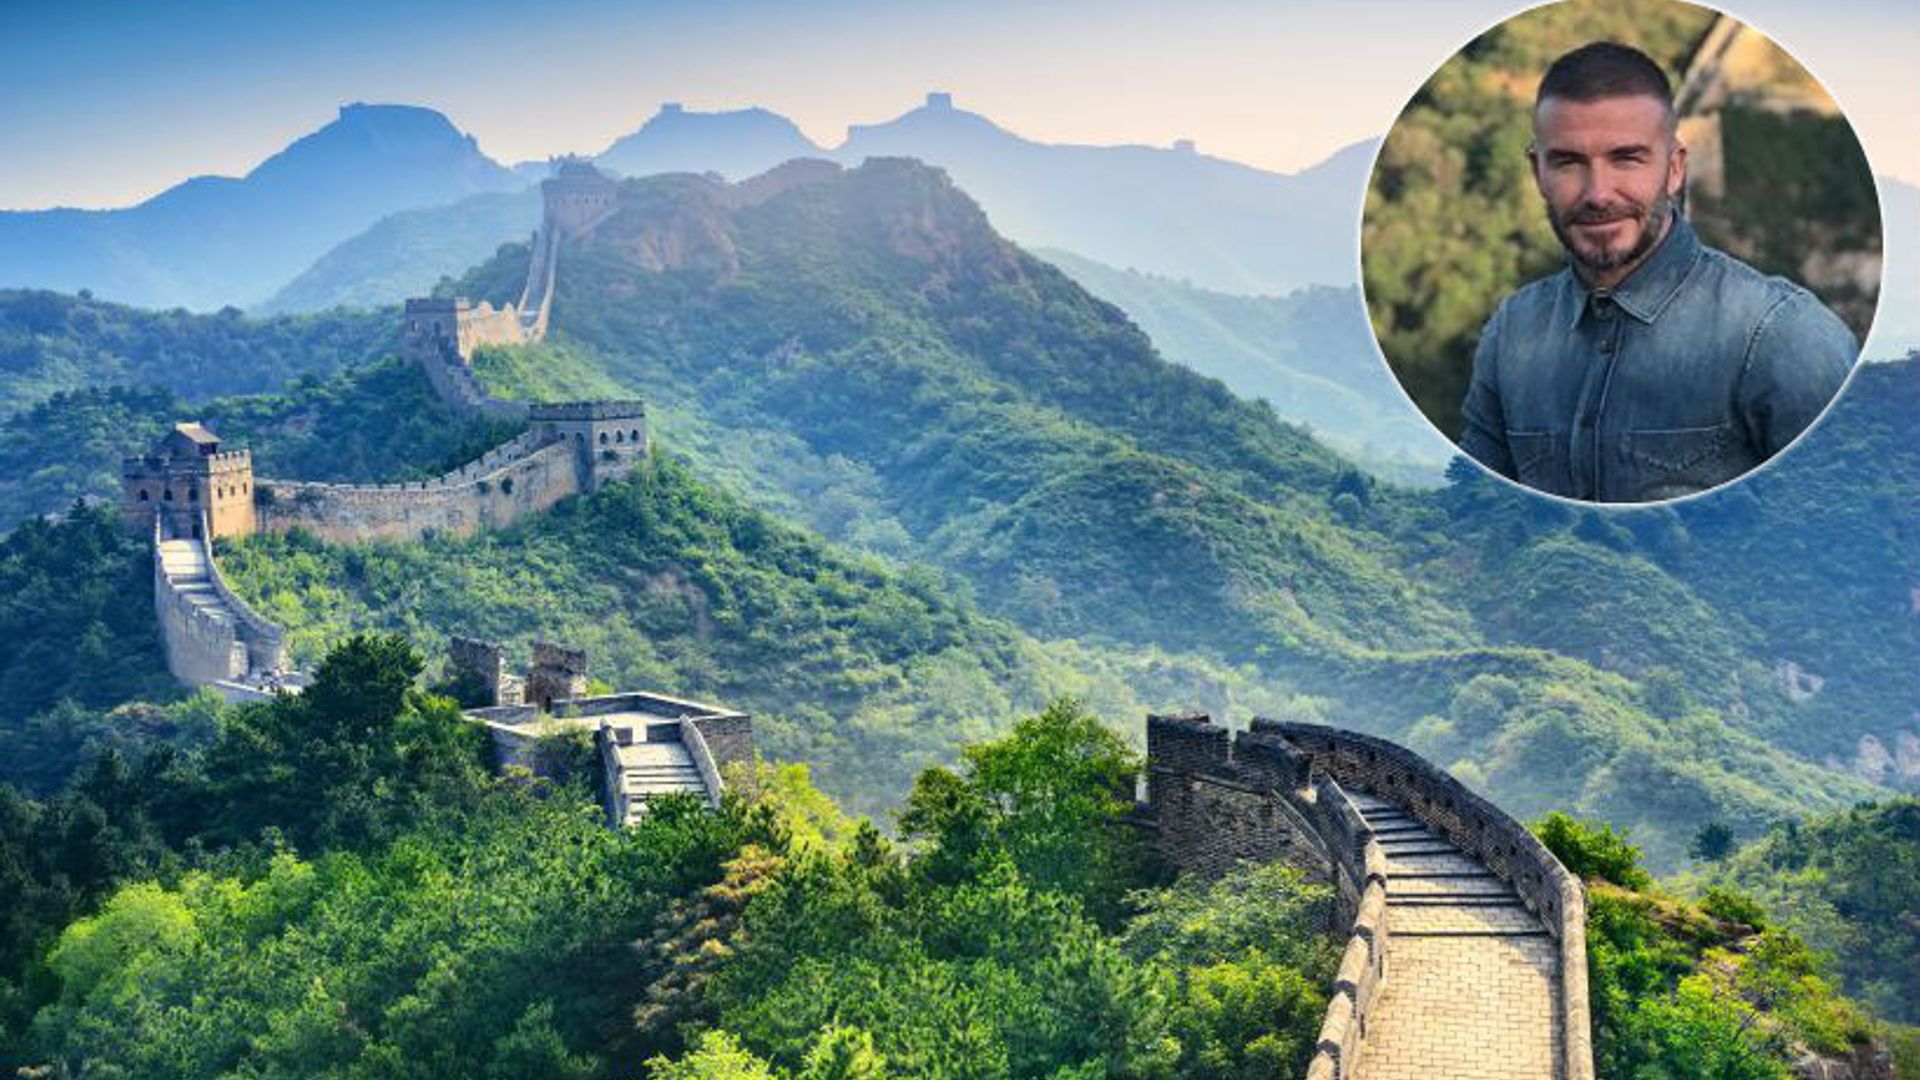 David-Beckham-Great-Wall-of-China